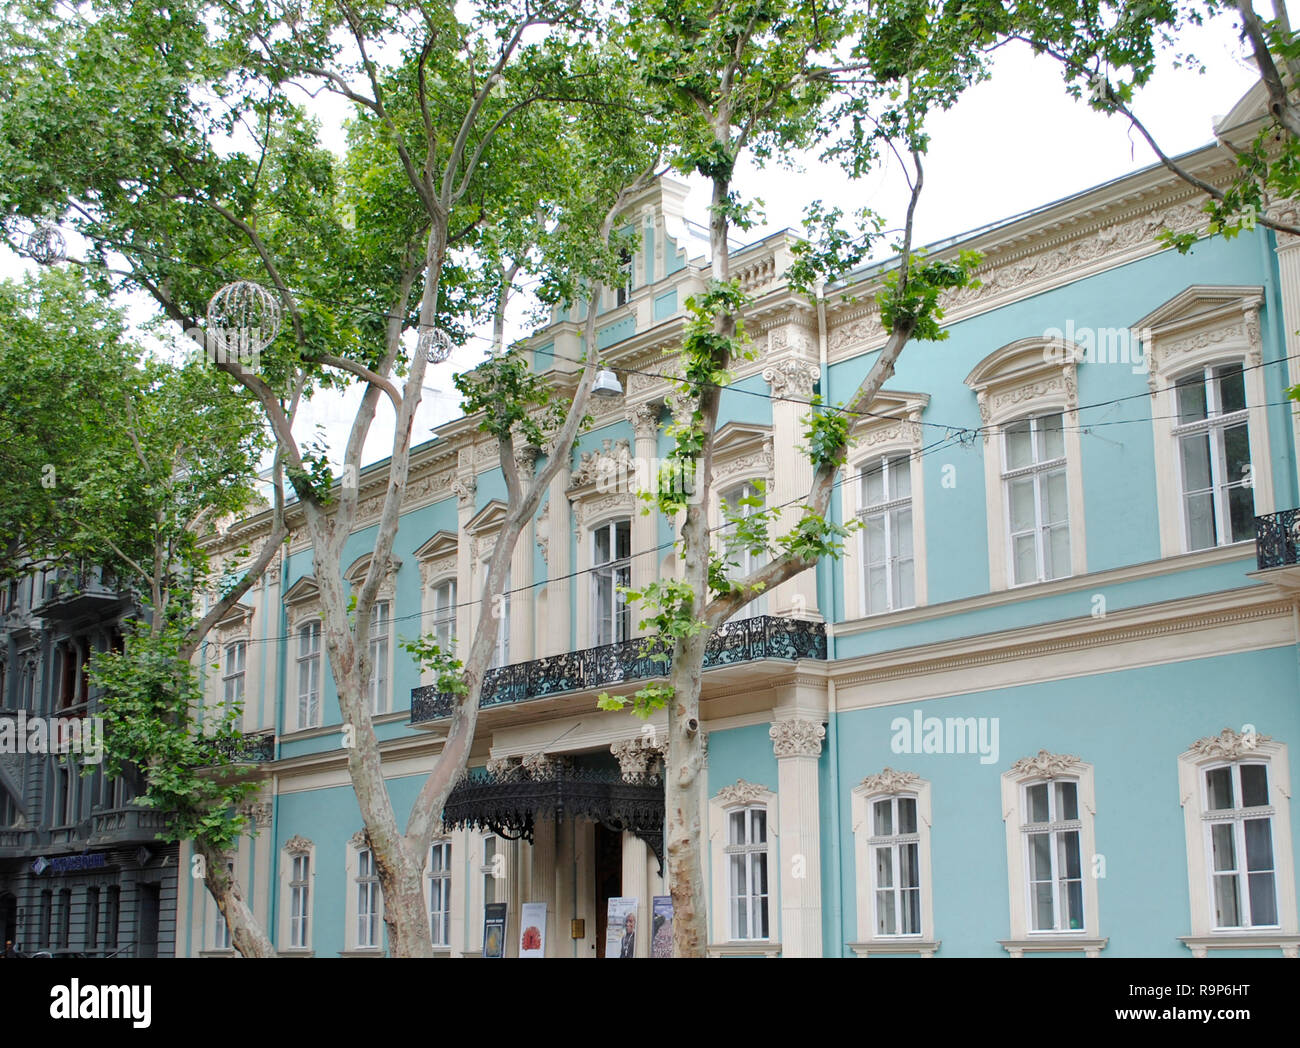 Odessa Musée d'art de l'Ouest et de l'Odessa. Palais construit en 1856-1858, conçu par l'architecte L. Otton. Vue de façade. L'Ukraine. L'Europe de l'Est. Banque D'Images